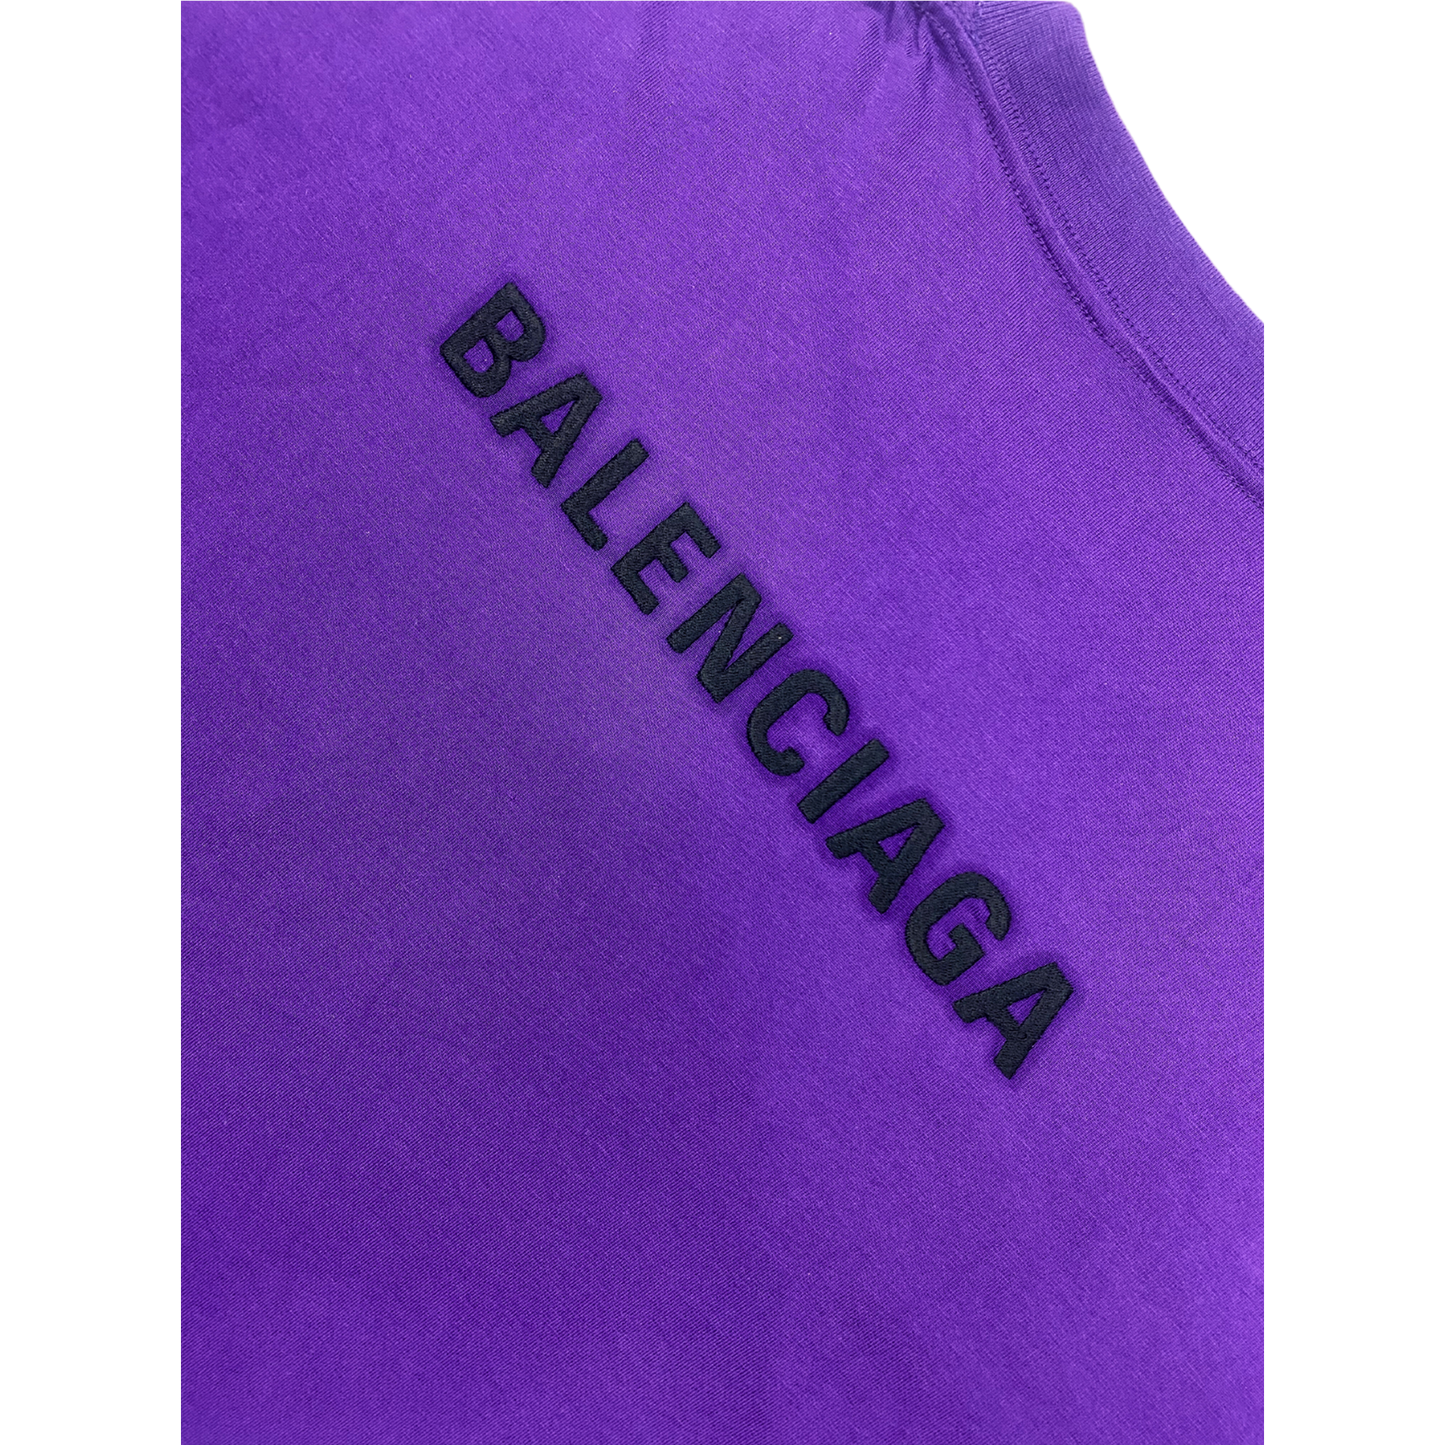 T-shirt violet Balenciaga avec logo